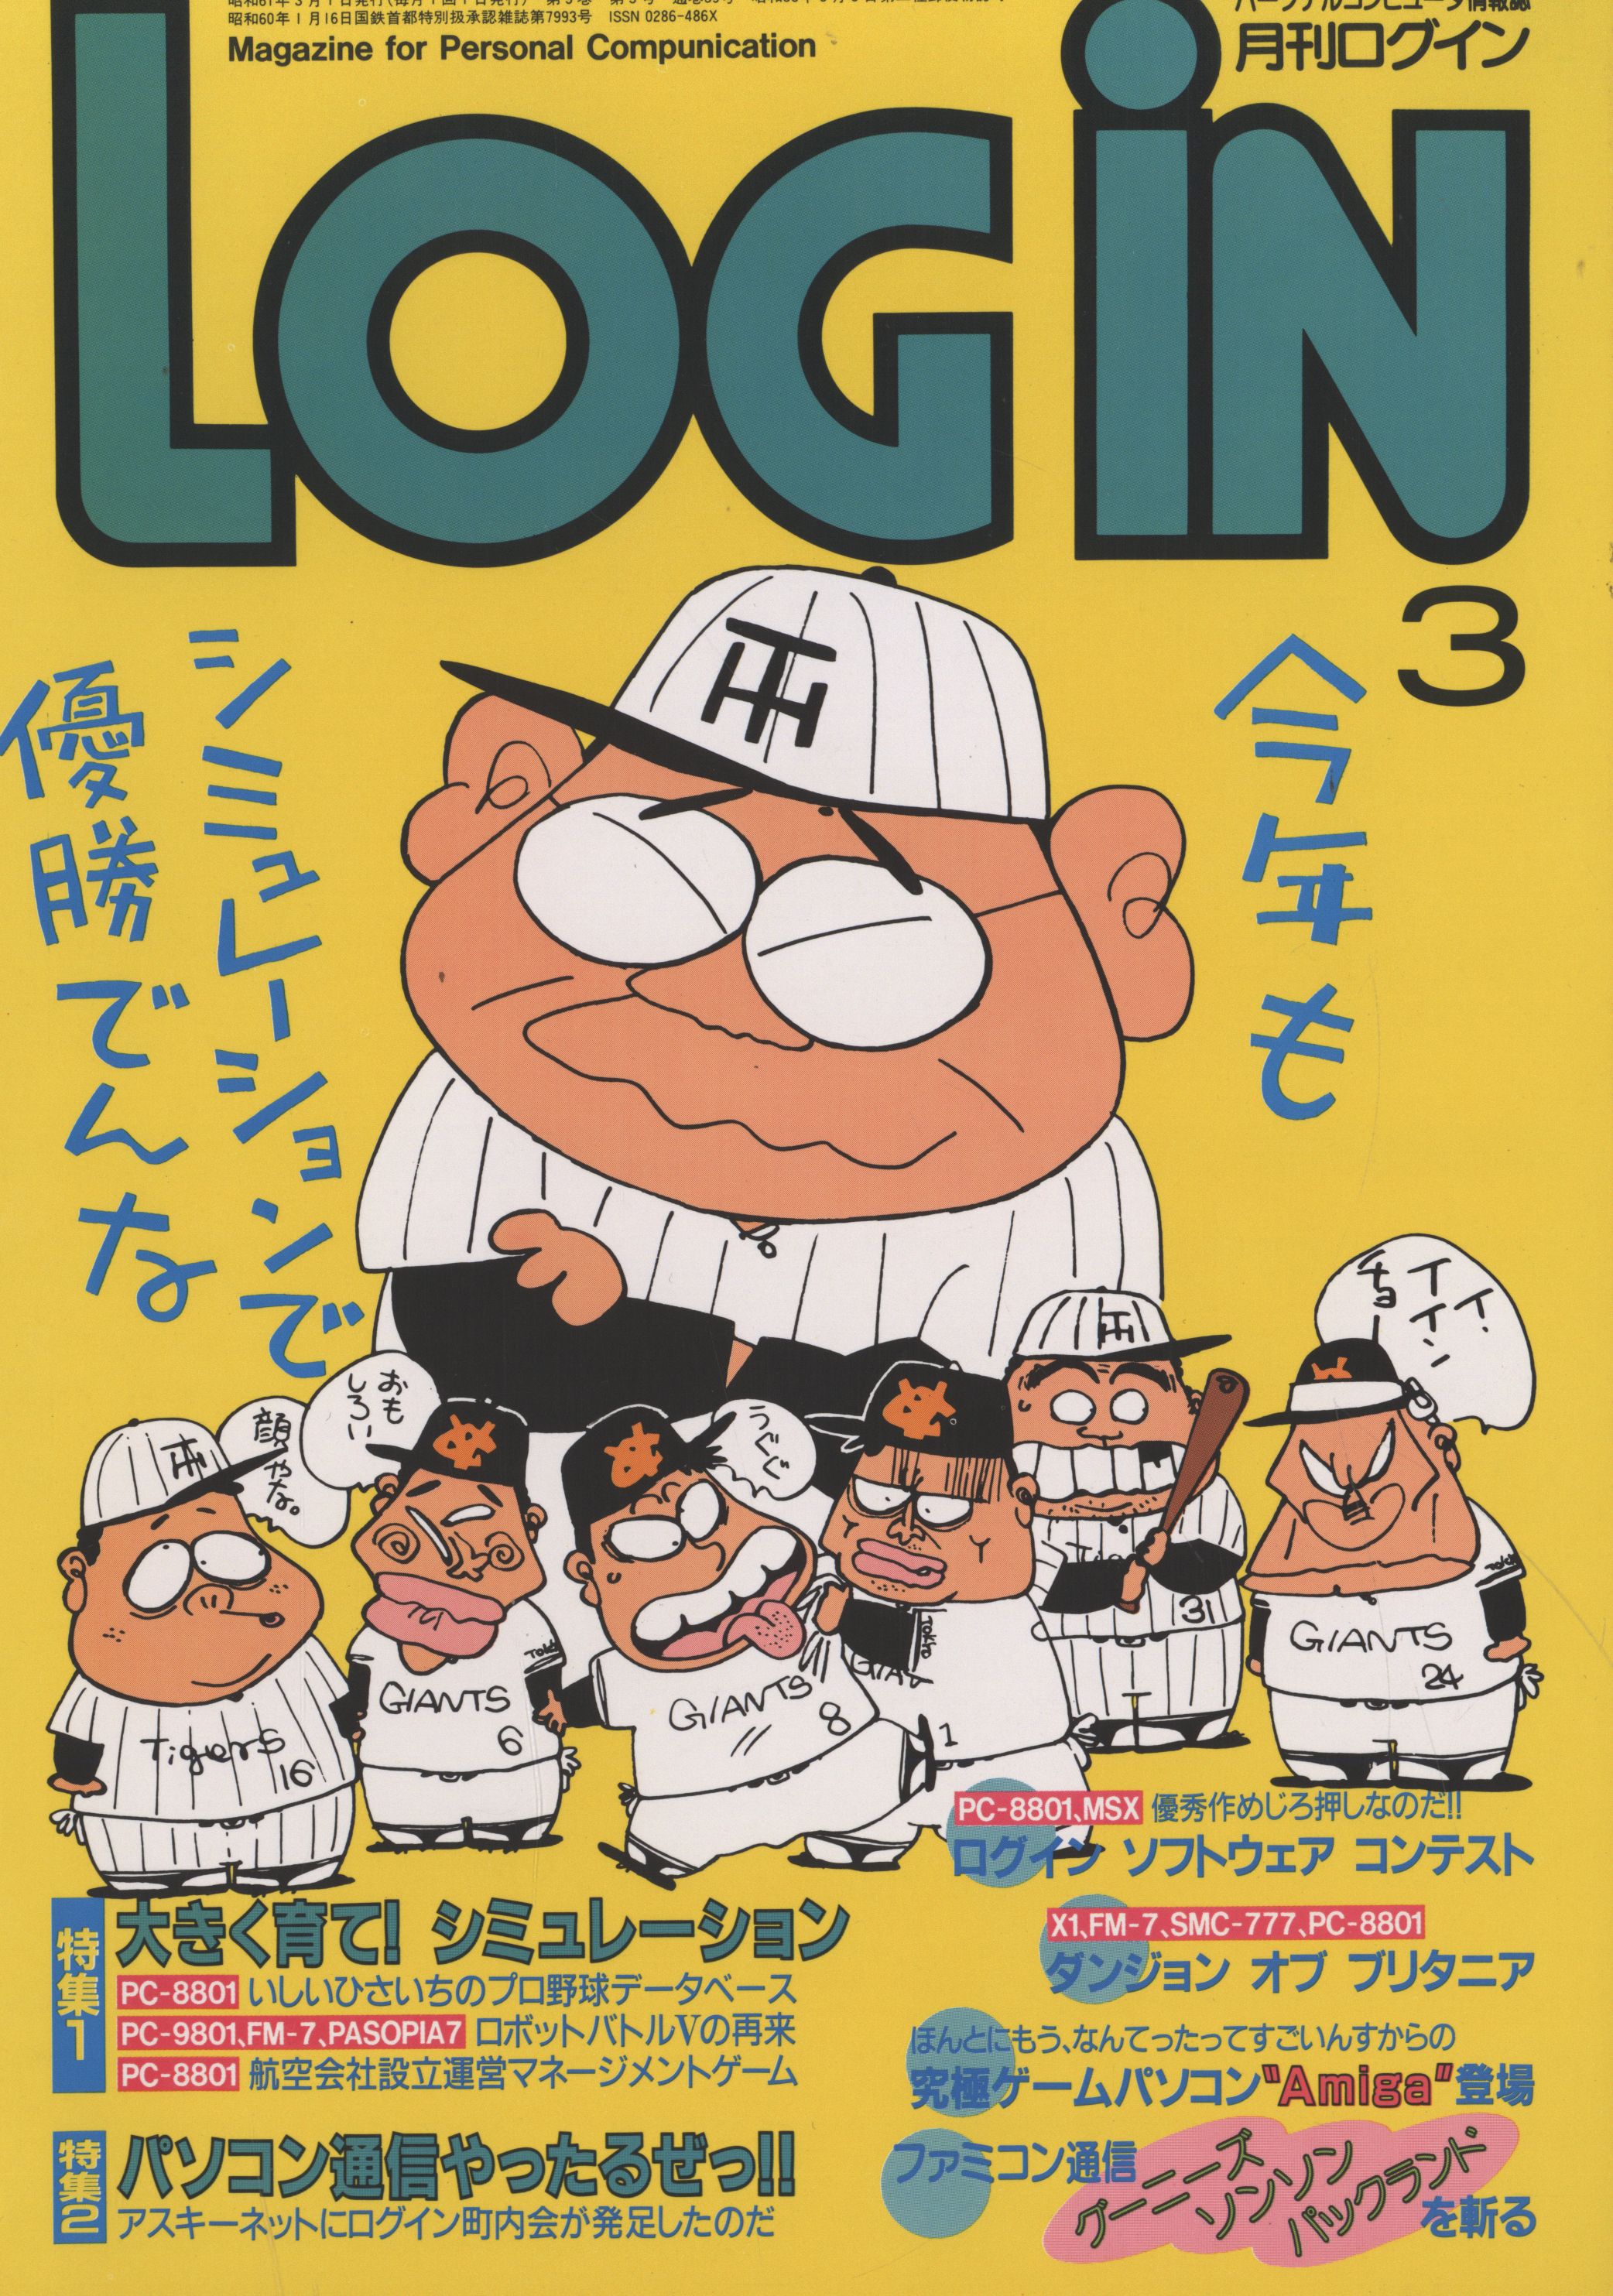 アスキー 1986年(昭和61年)のゲーム雑誌 LOGiN 1986年03月号 8603